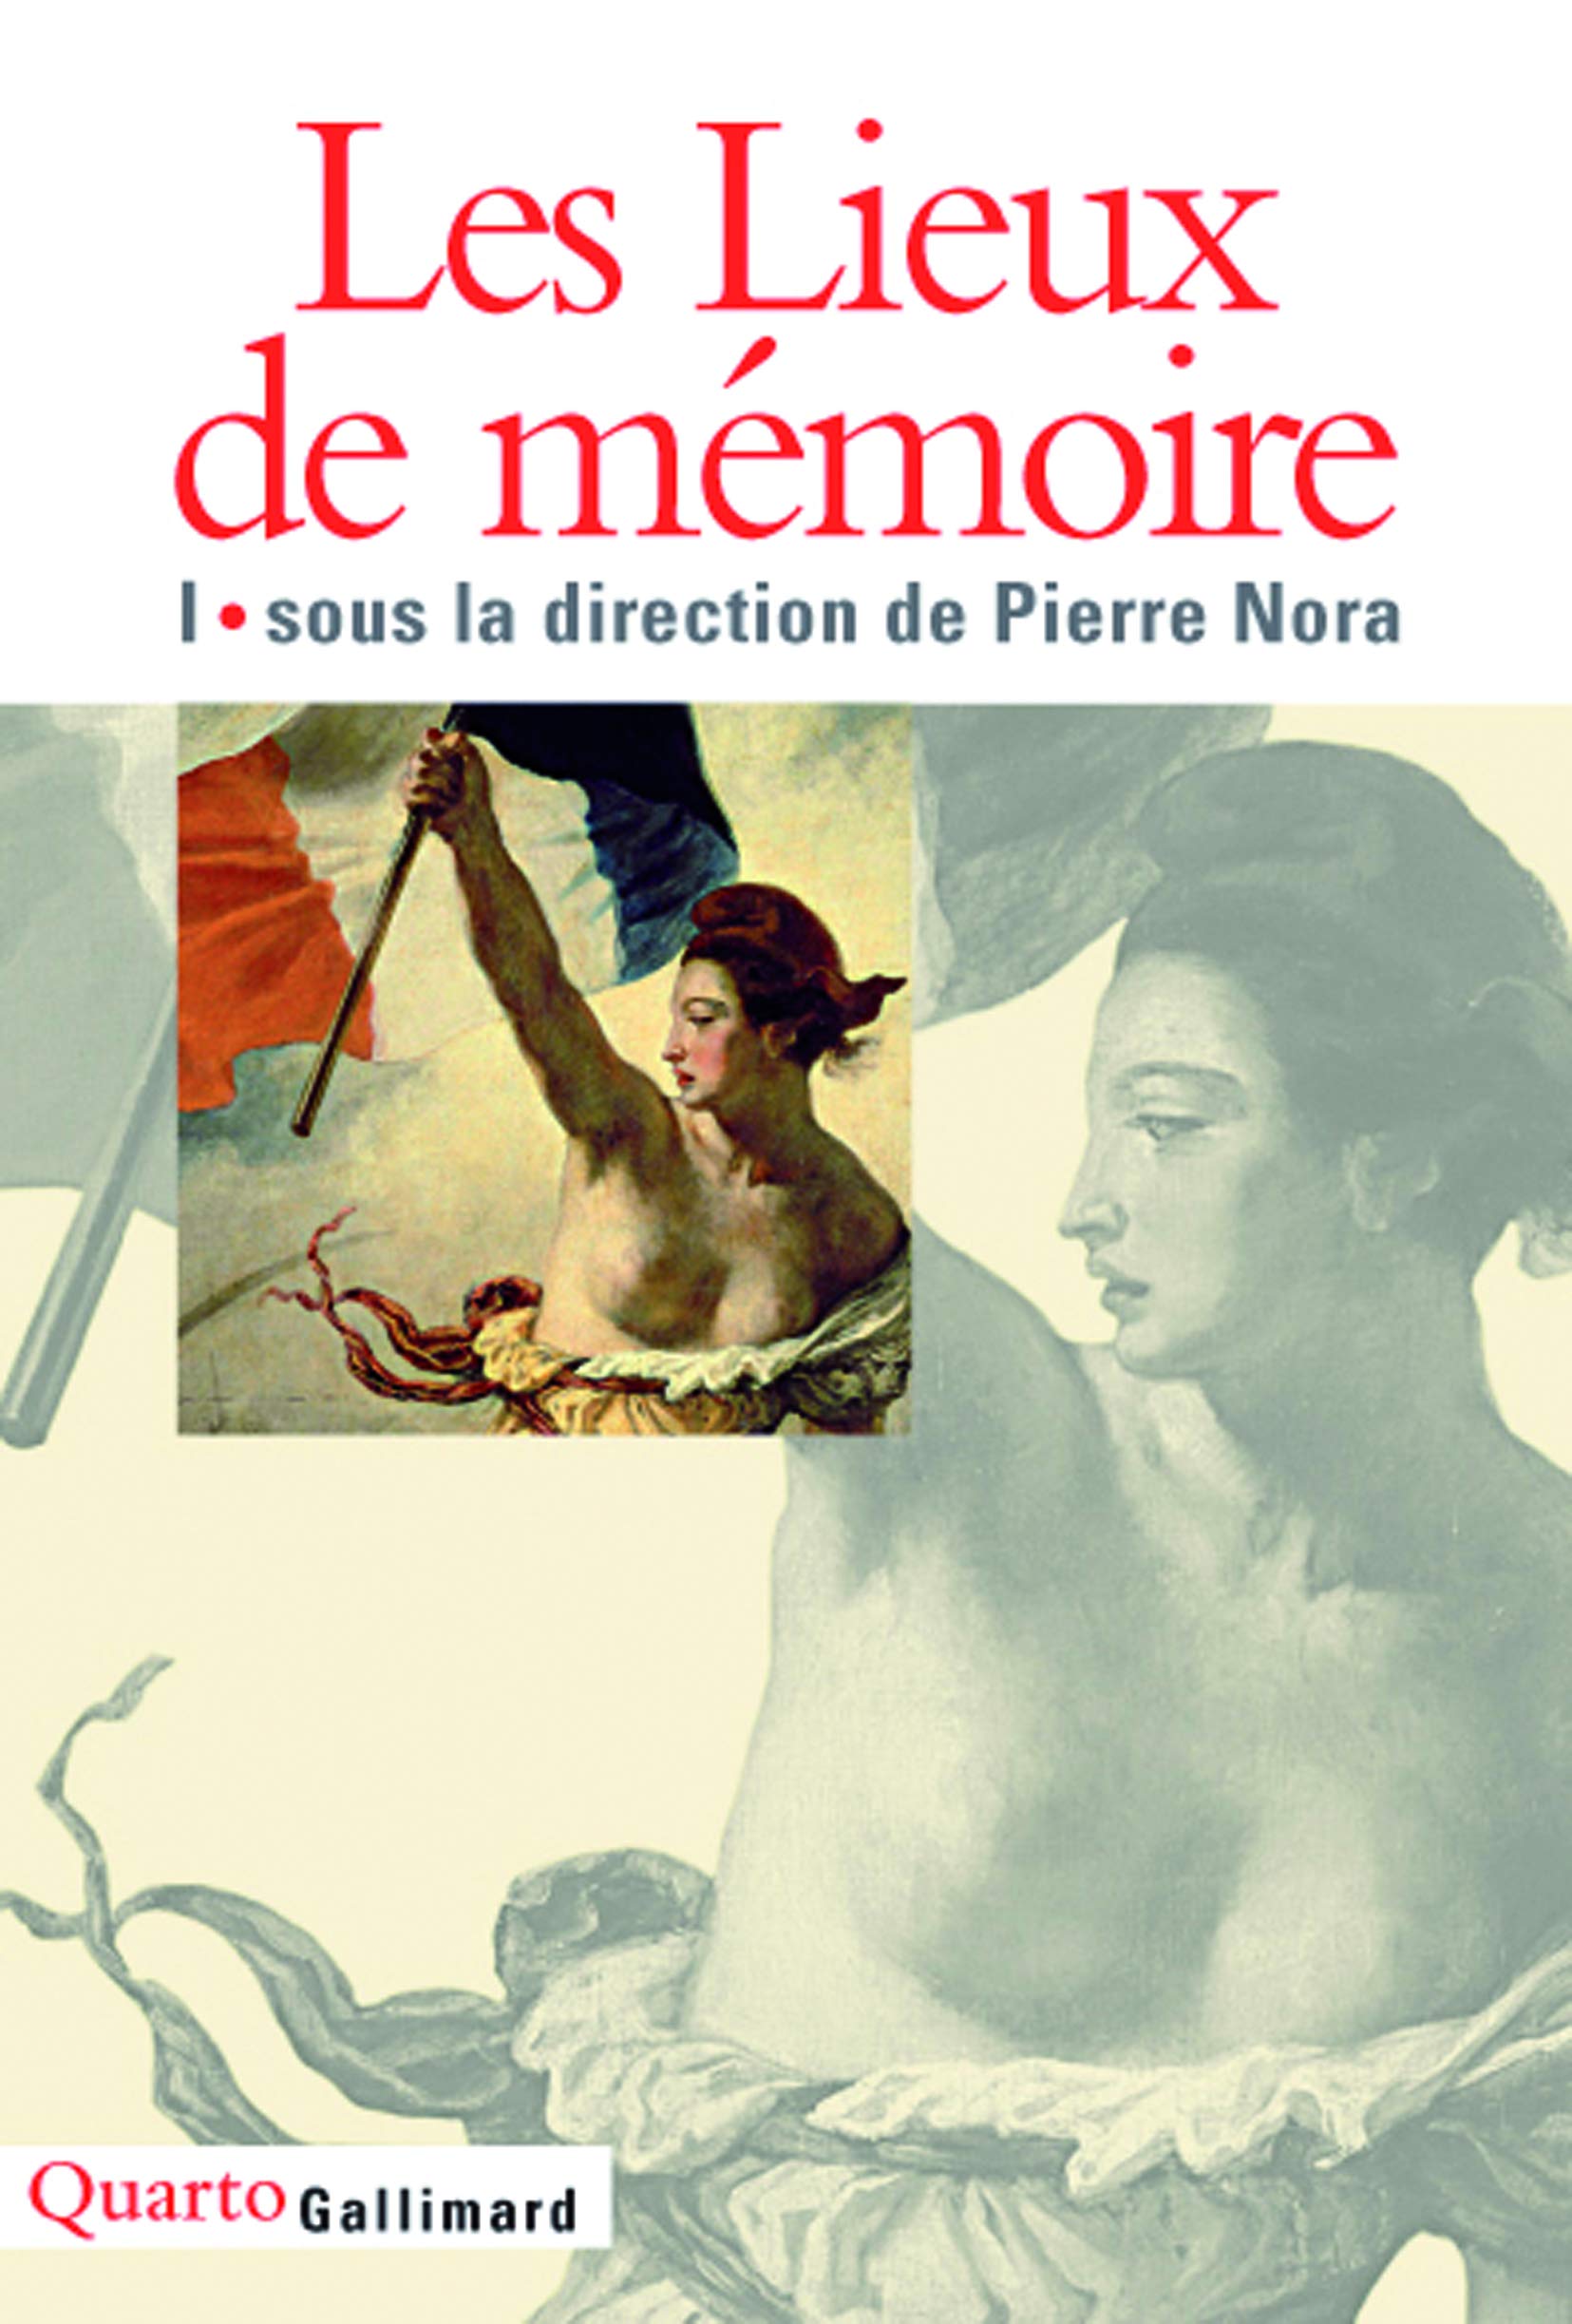 Les lieux de memoire # 1 - Pierre Nora